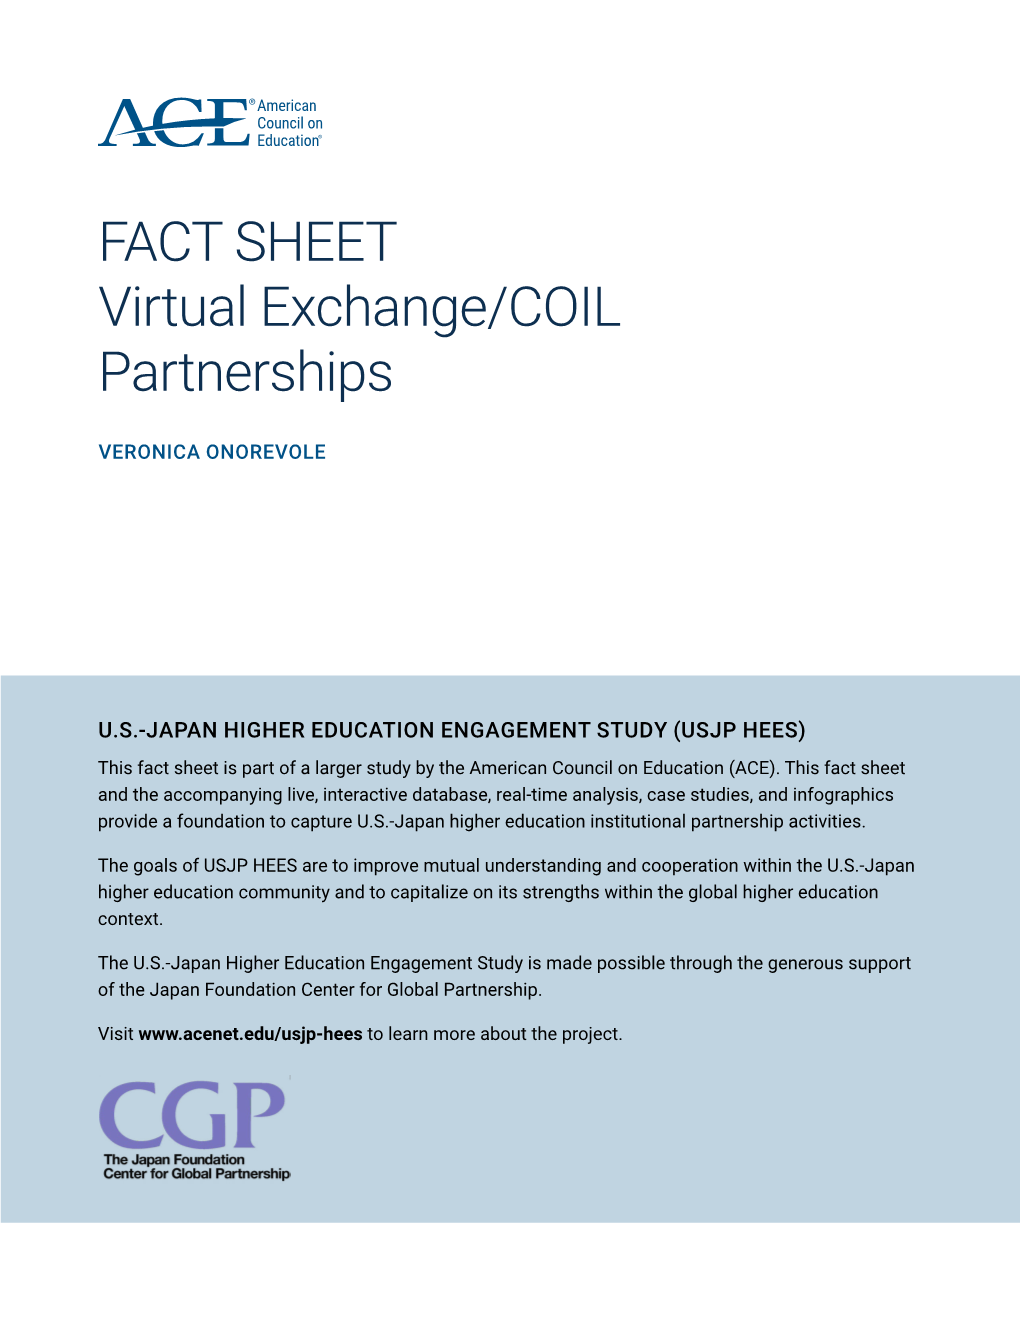 FACT SHEET Virtual Exchange/COIL Partnerships